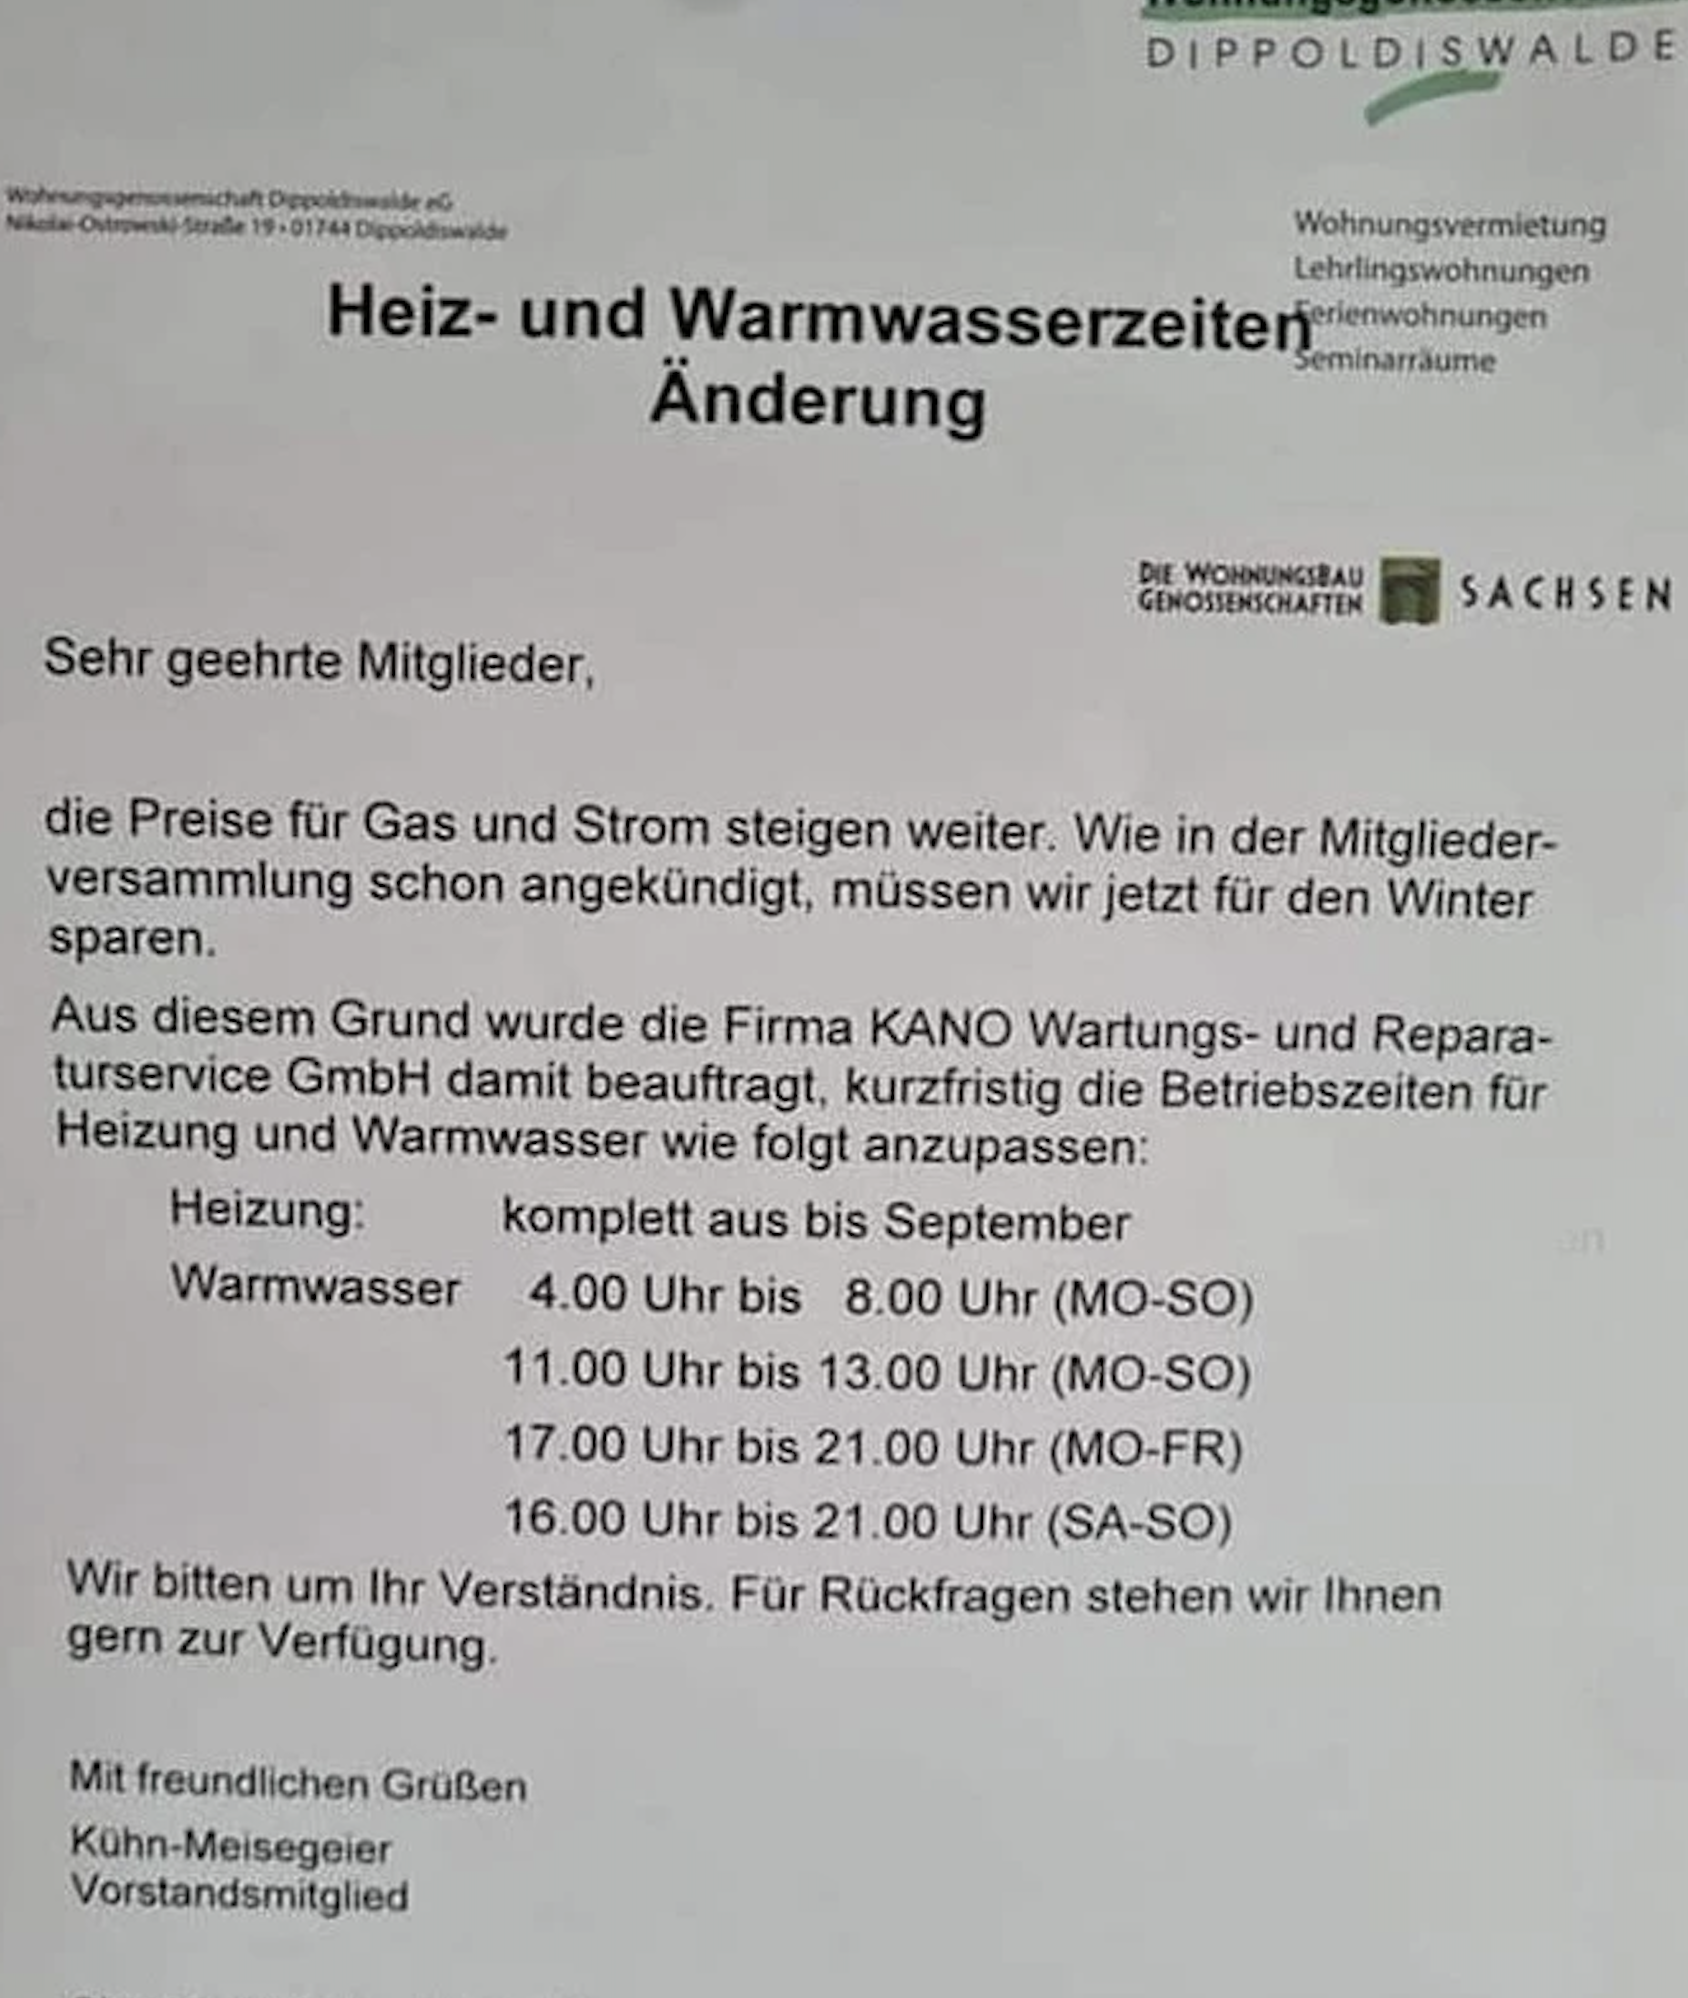 Warmduschen nach Zeitplan - Auszug aus dem Brief der Wohnungsgesnossenschaft Dippoldiswalde